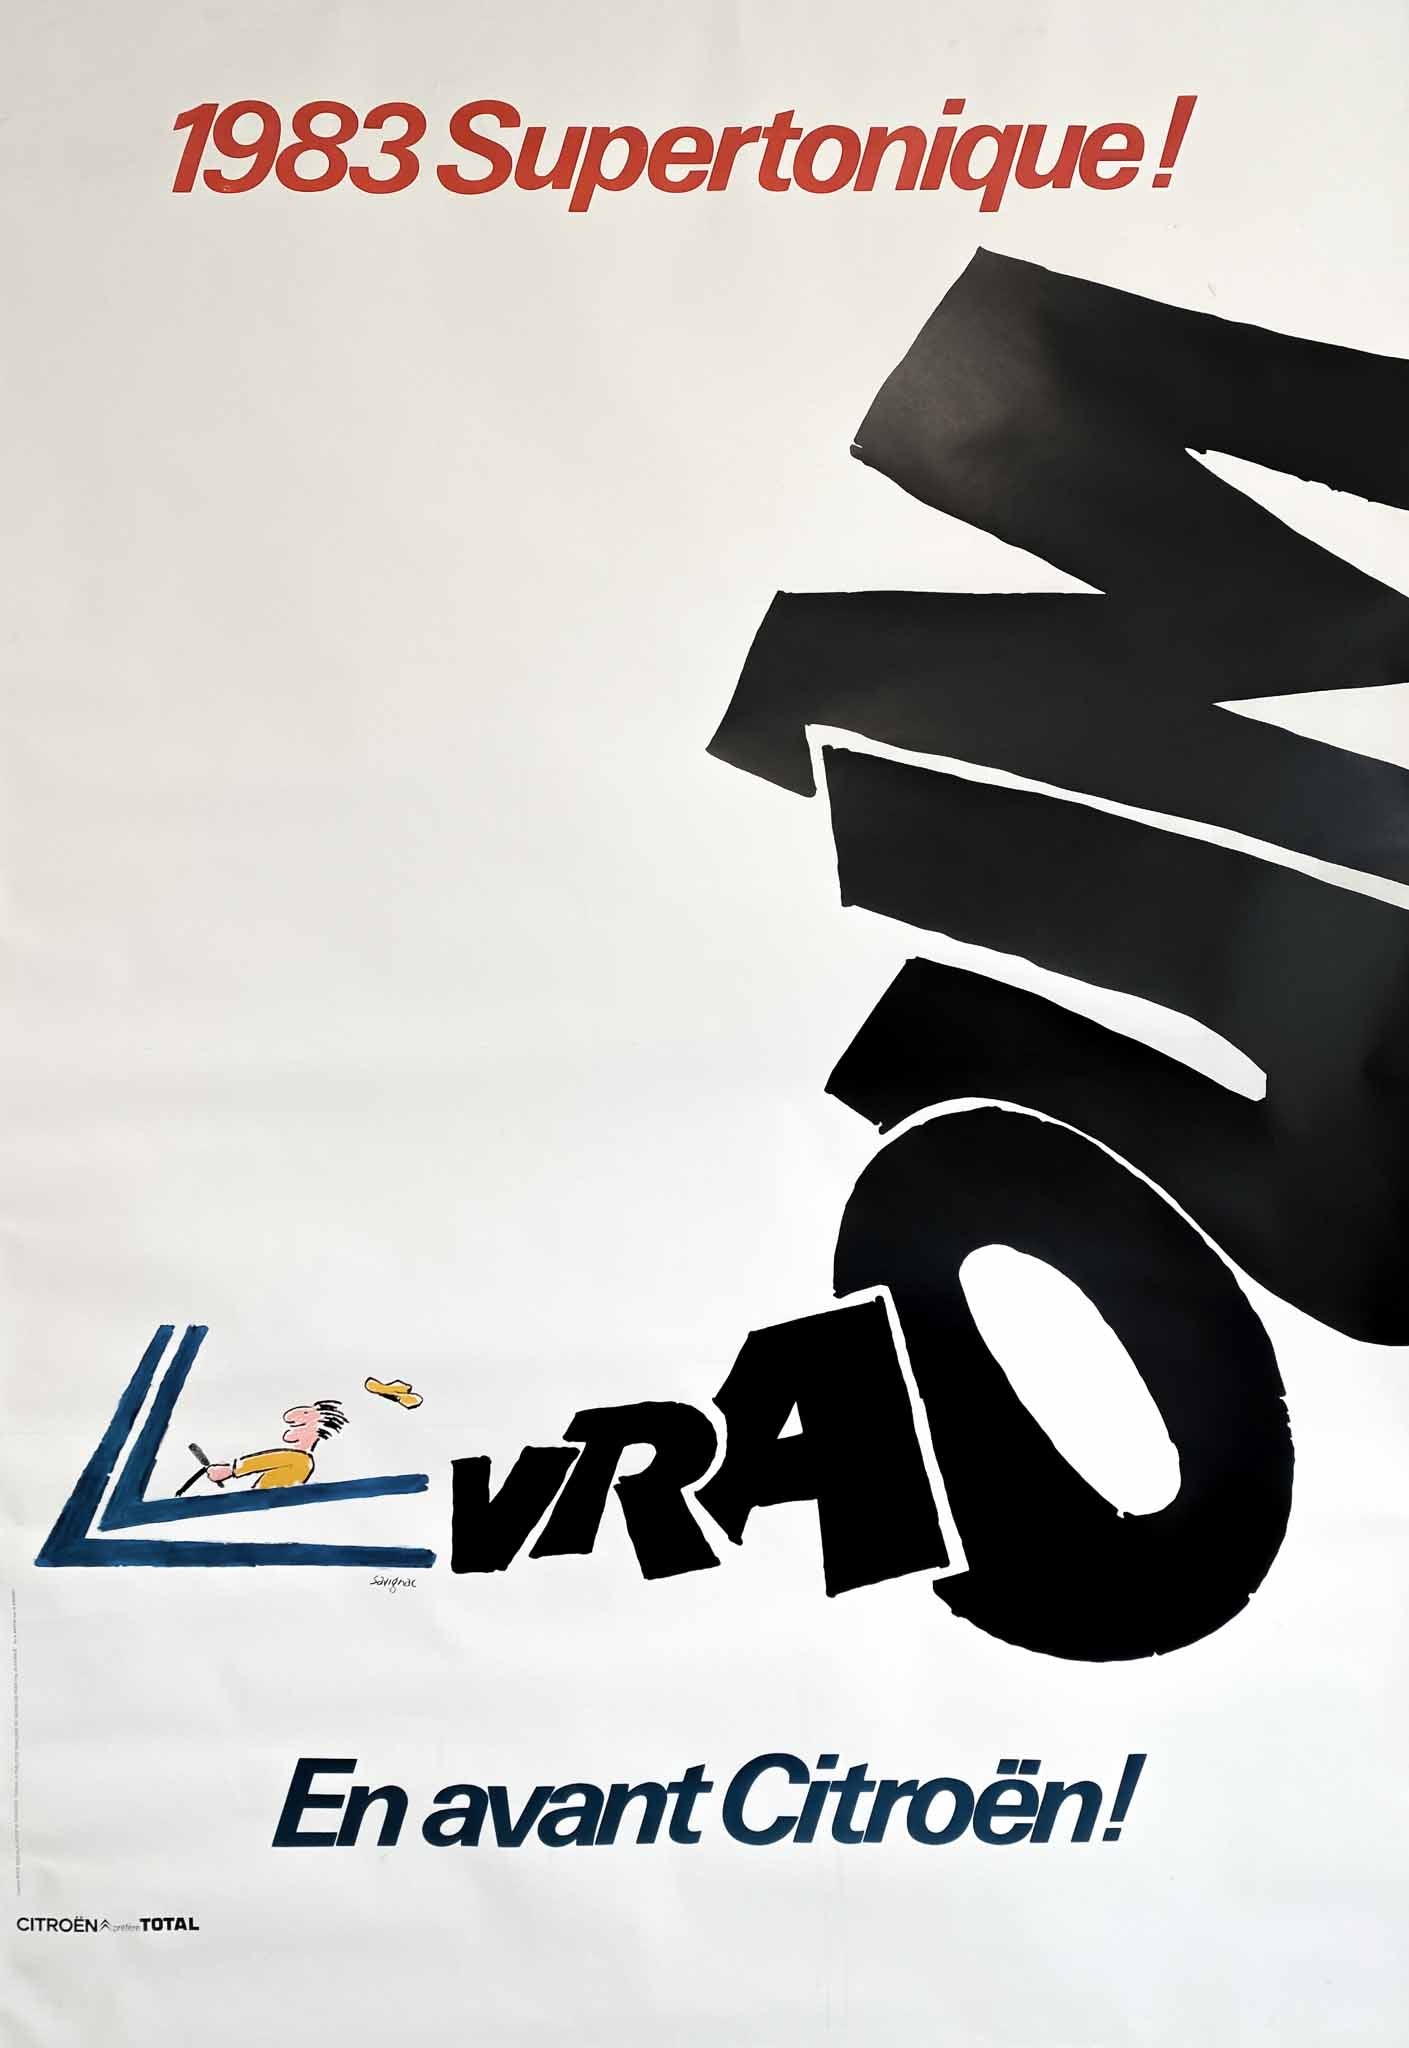 Superbe affiche très décorative, du célèbre affichiste Français, Raymond Savignac.  L'affiche met en avant le slogan 1983 Supertonique!  Avec un dessin d'une voiture reprenant le logo de la marque.  Ainsi qu'un "Vraoum" signifiant le bruit de la voiture.